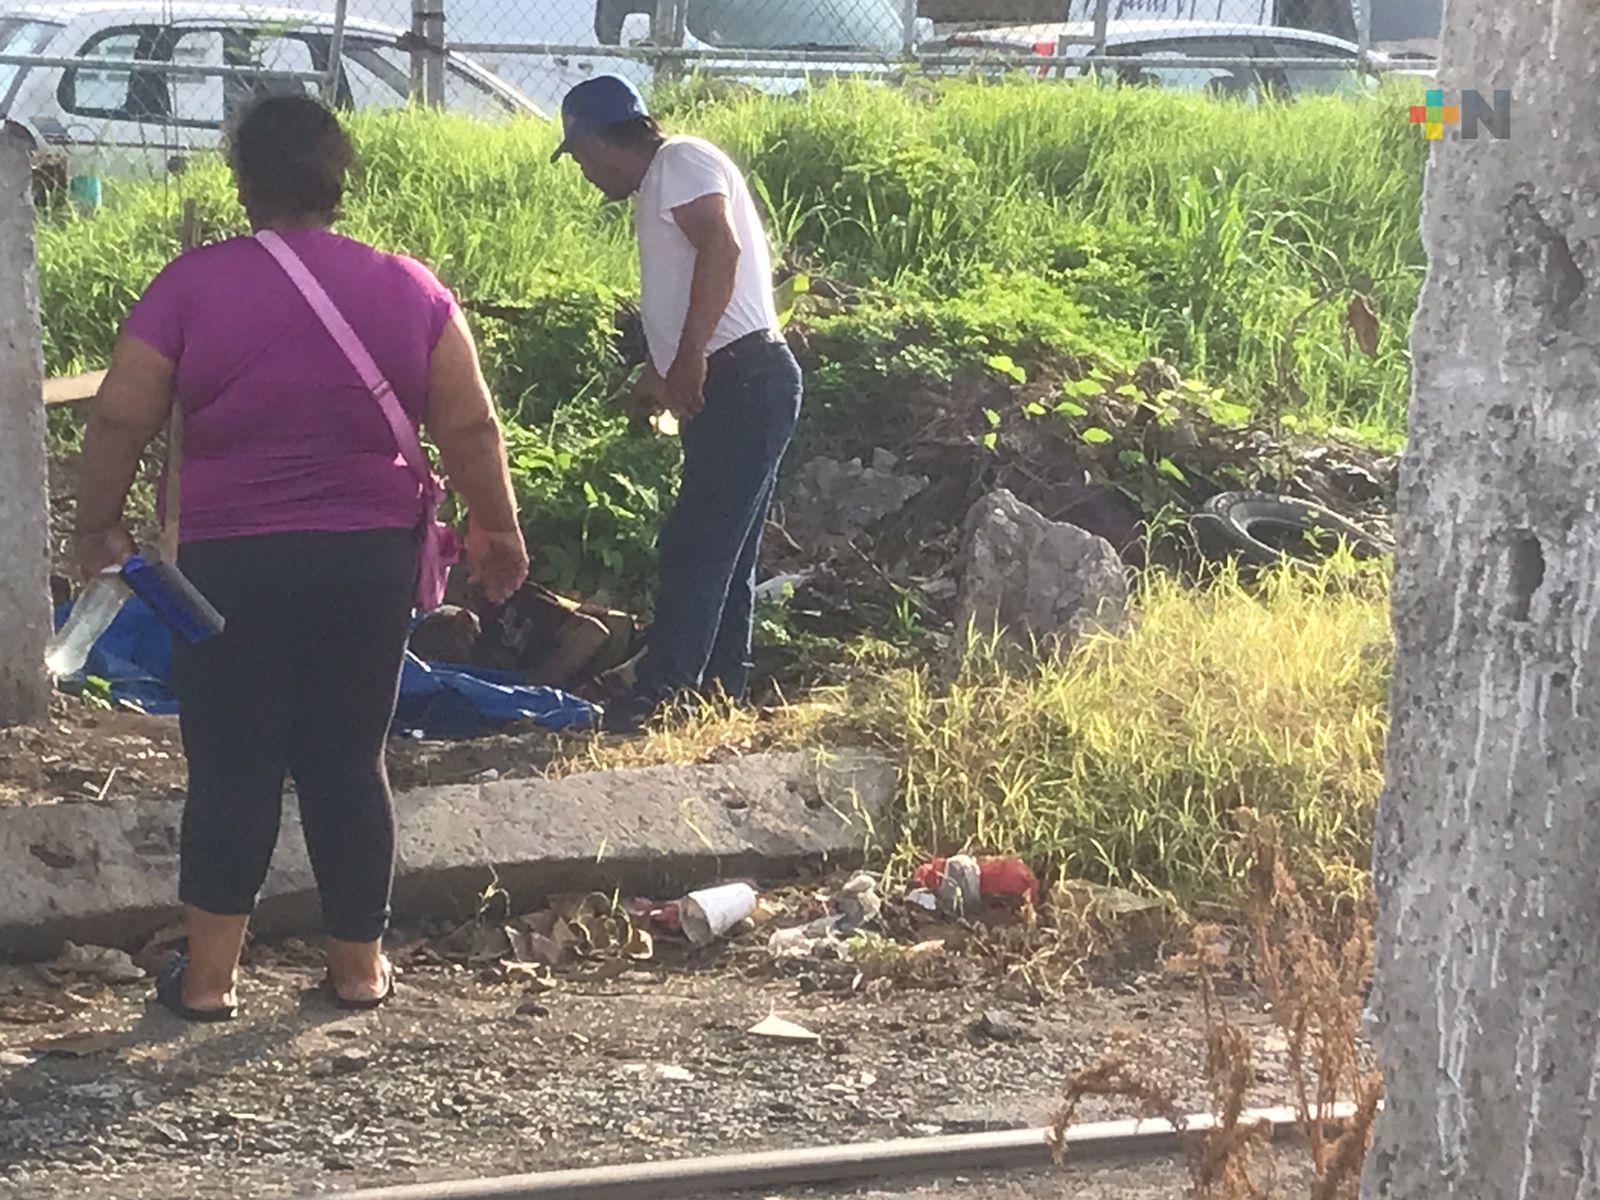 Encuentran a persona mayor abandonada en terreno baldío junto a vías del tren